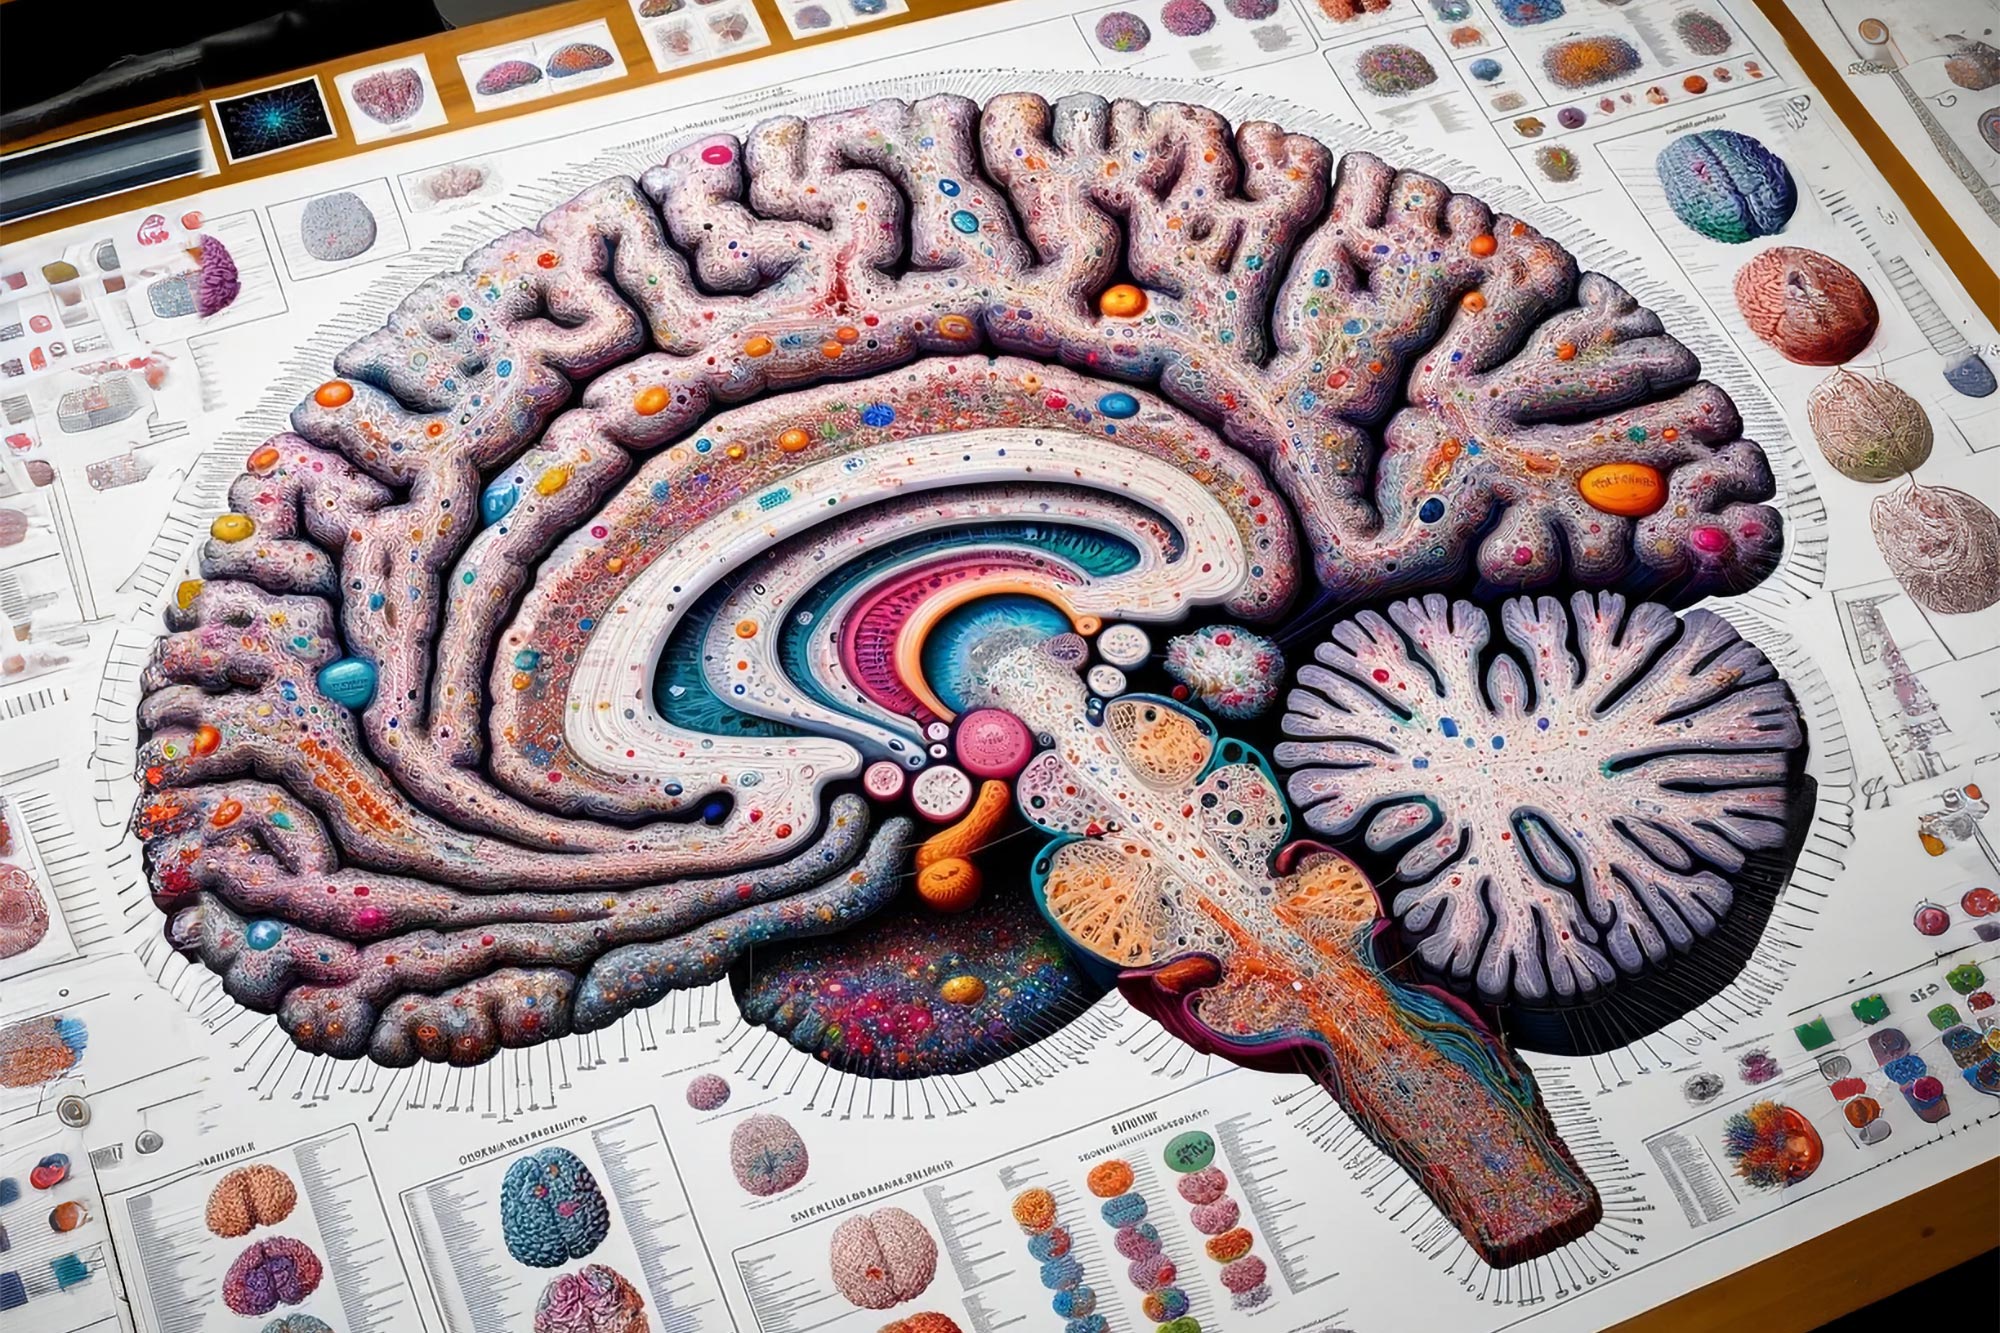 Menguraikan gangguan neuropsikiatri menggunakan atlas sel otak manusia